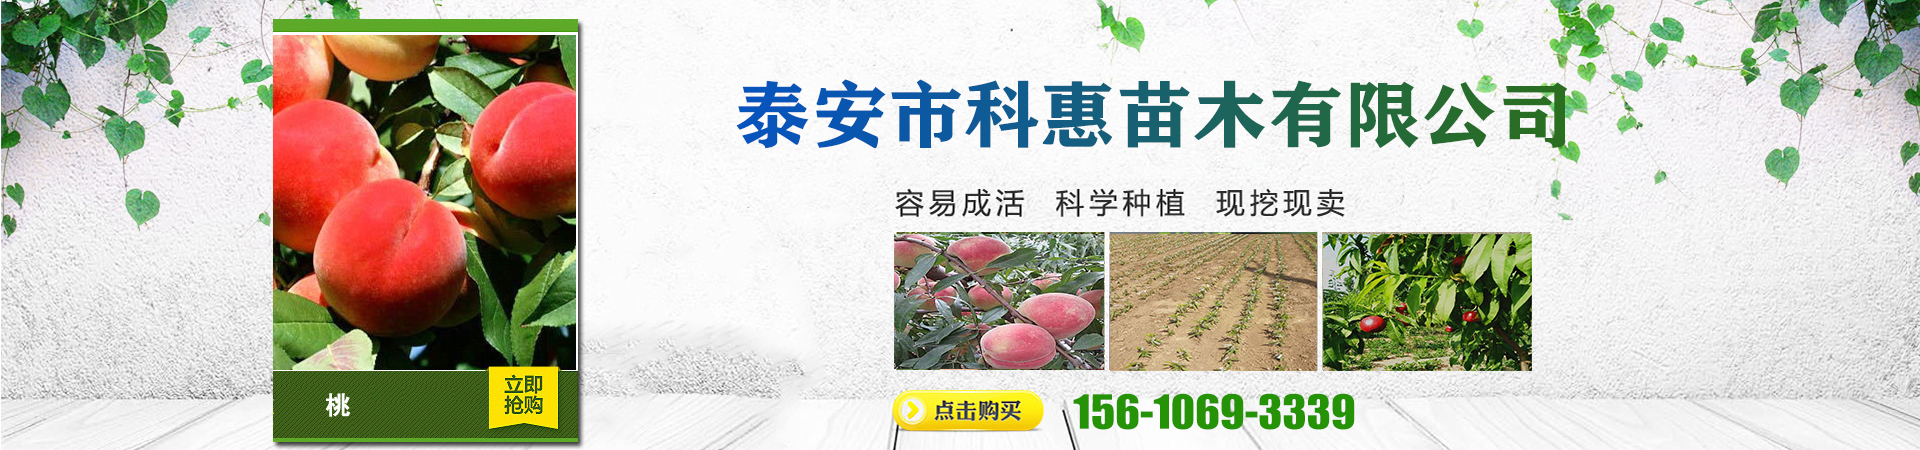 桃树苗新品种种植基地